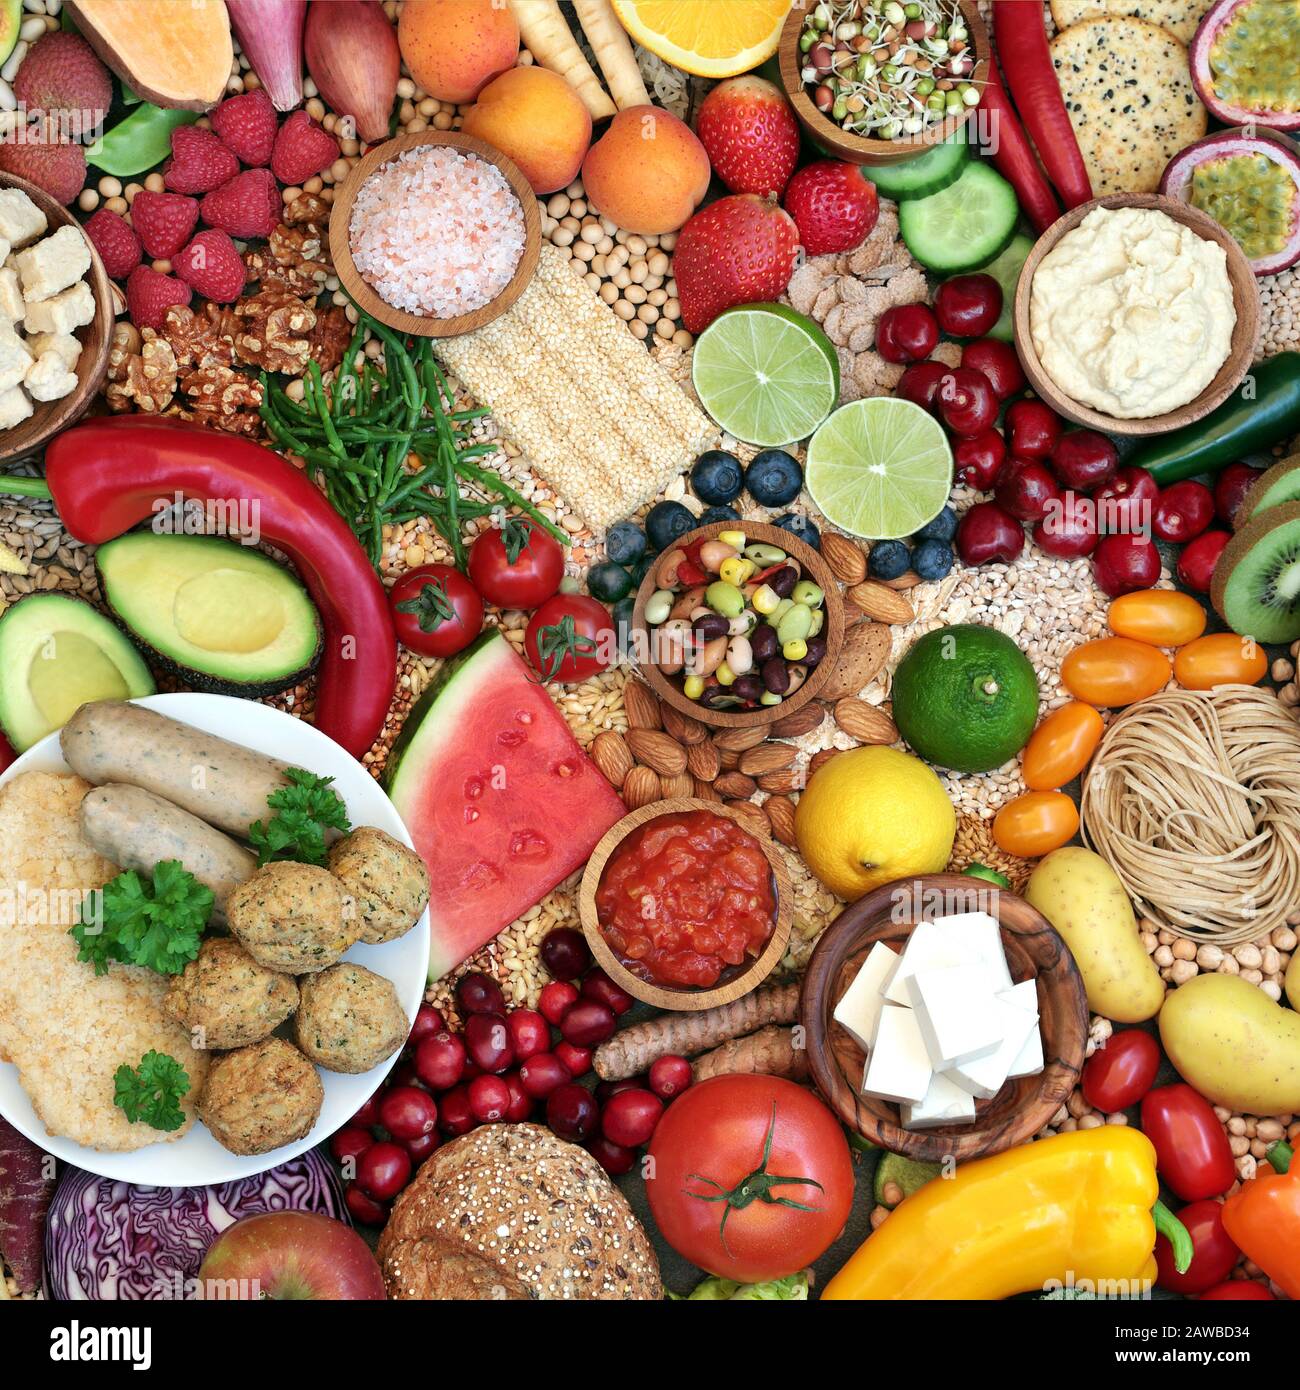 Super nourriture végétalienne pour la forme physique avec des aliments de santé élevés en protéines, vitamines, minéraux, antioxydants, anthocyanines, fibres, oméga 3 et glucides intelligents. Banque D'Images